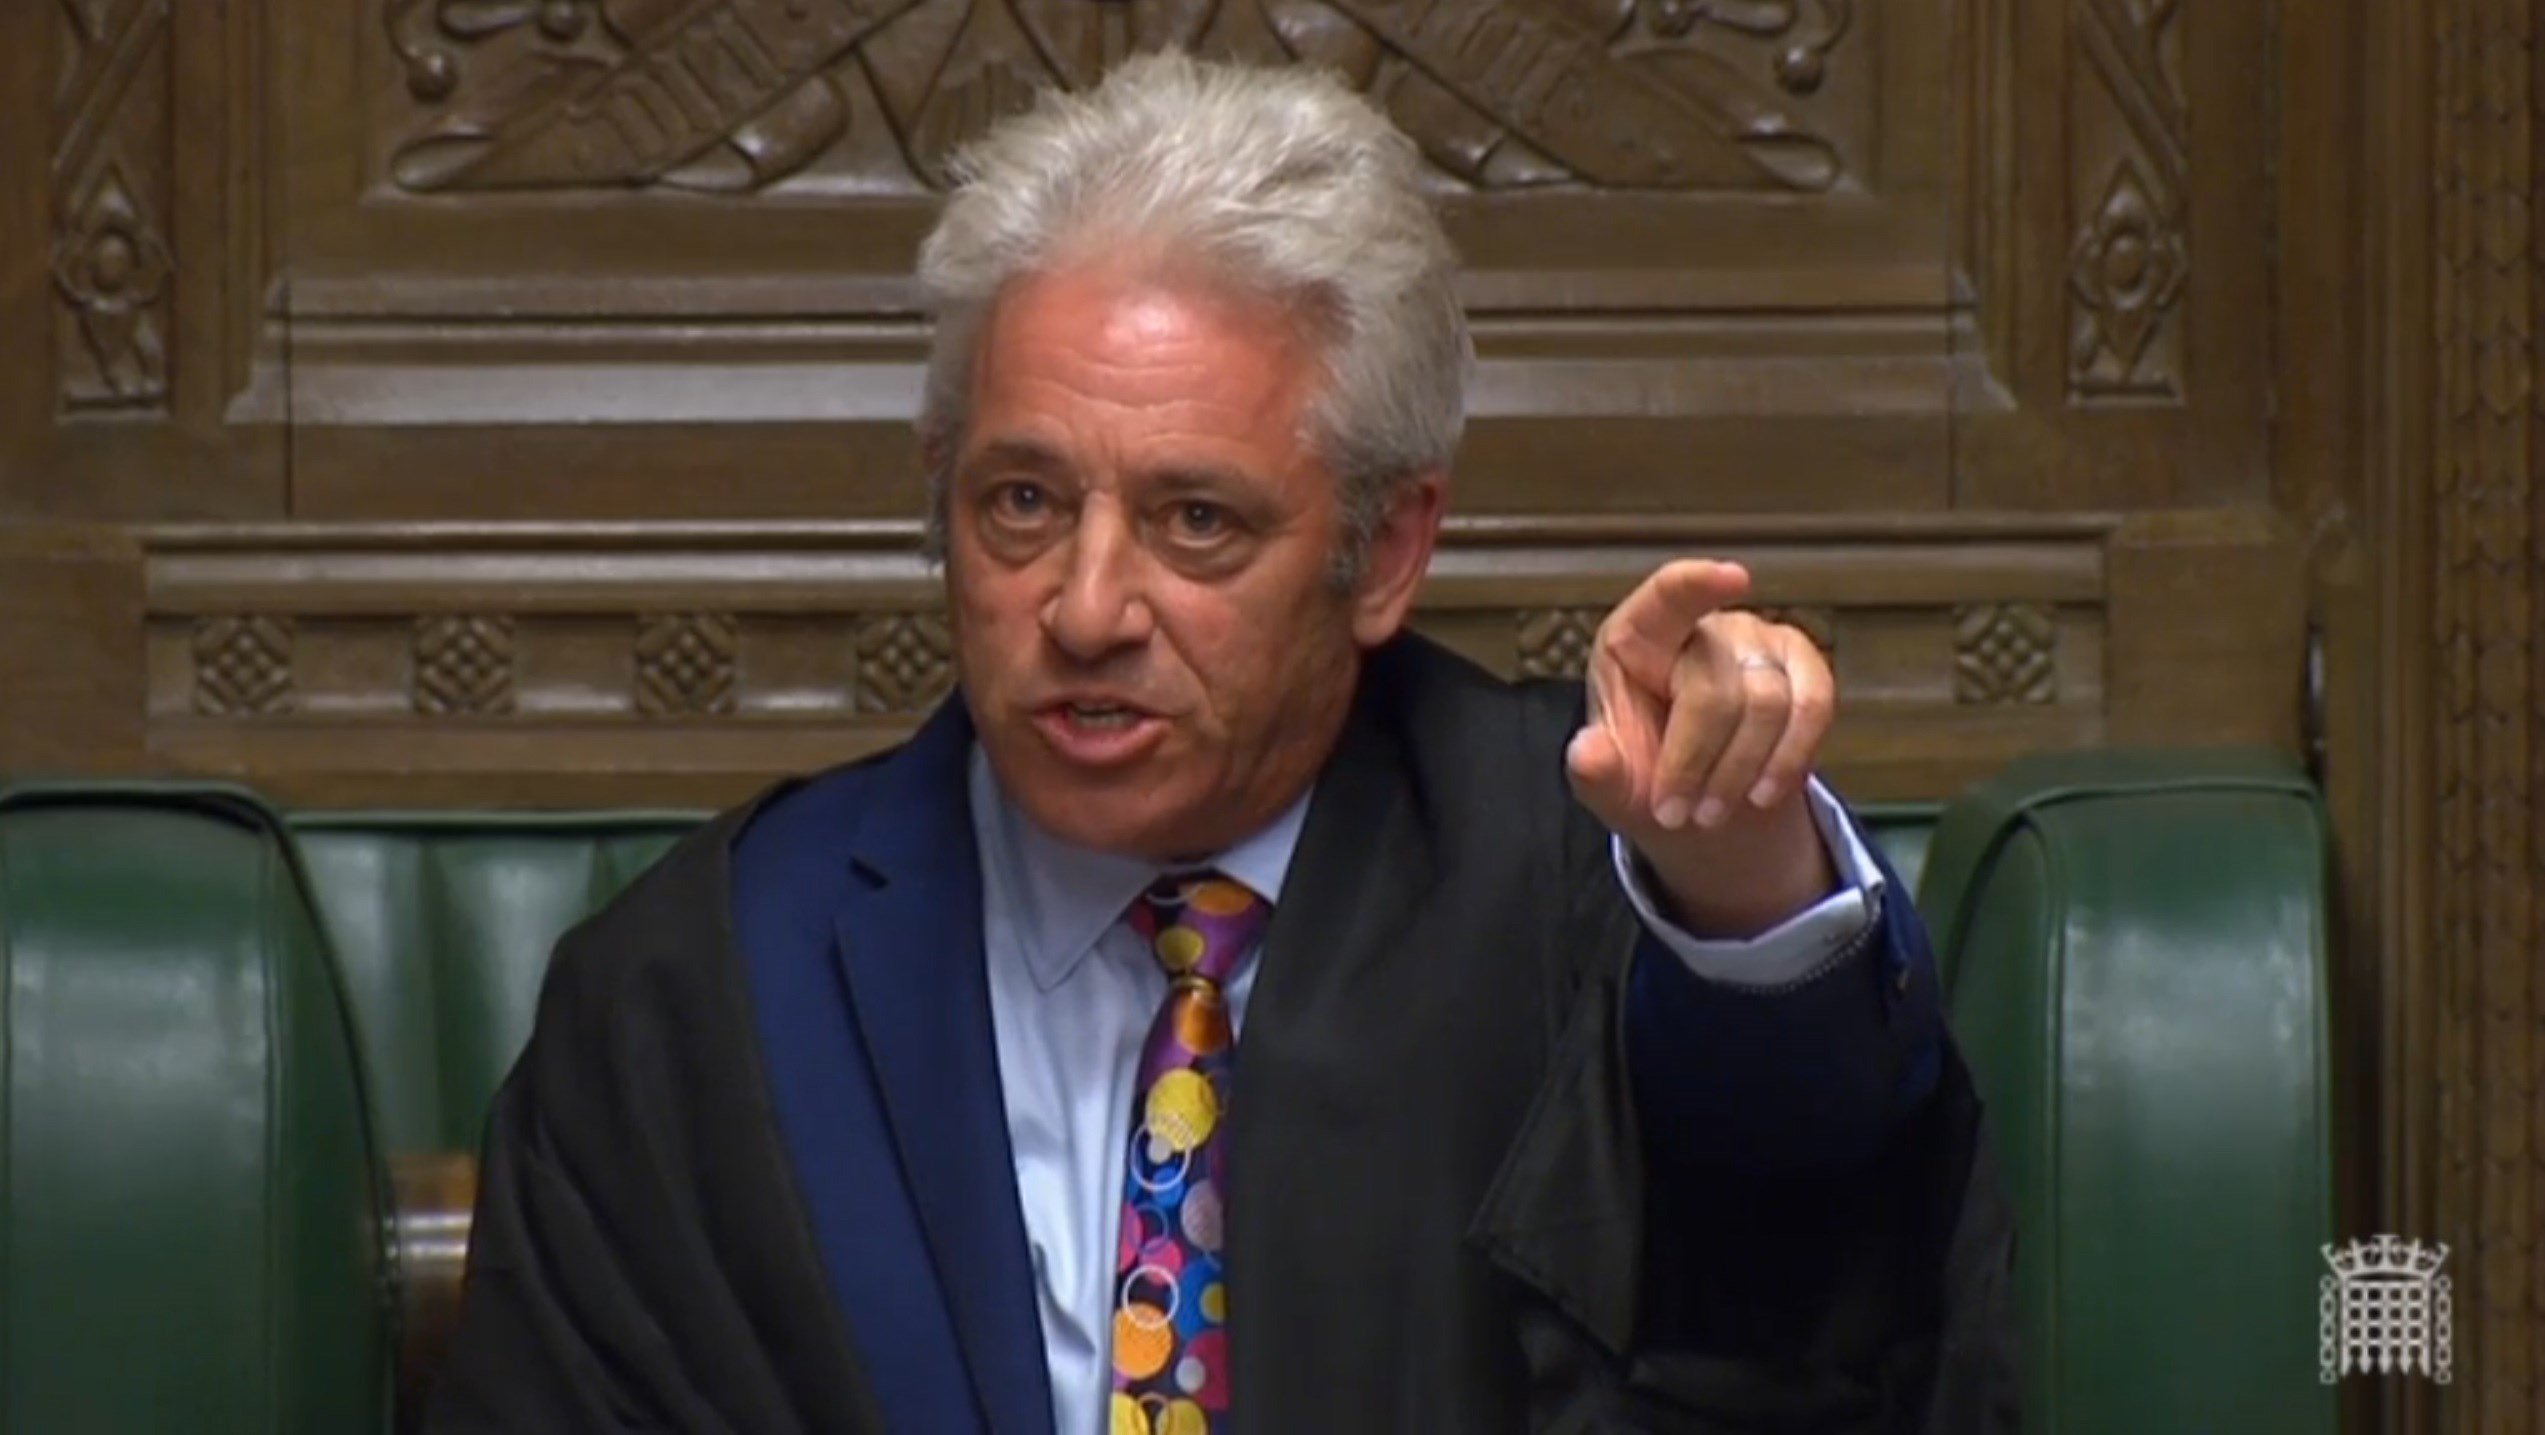 Lo que sufrió el 'speaker' del Parlamento británico en el partido conservador